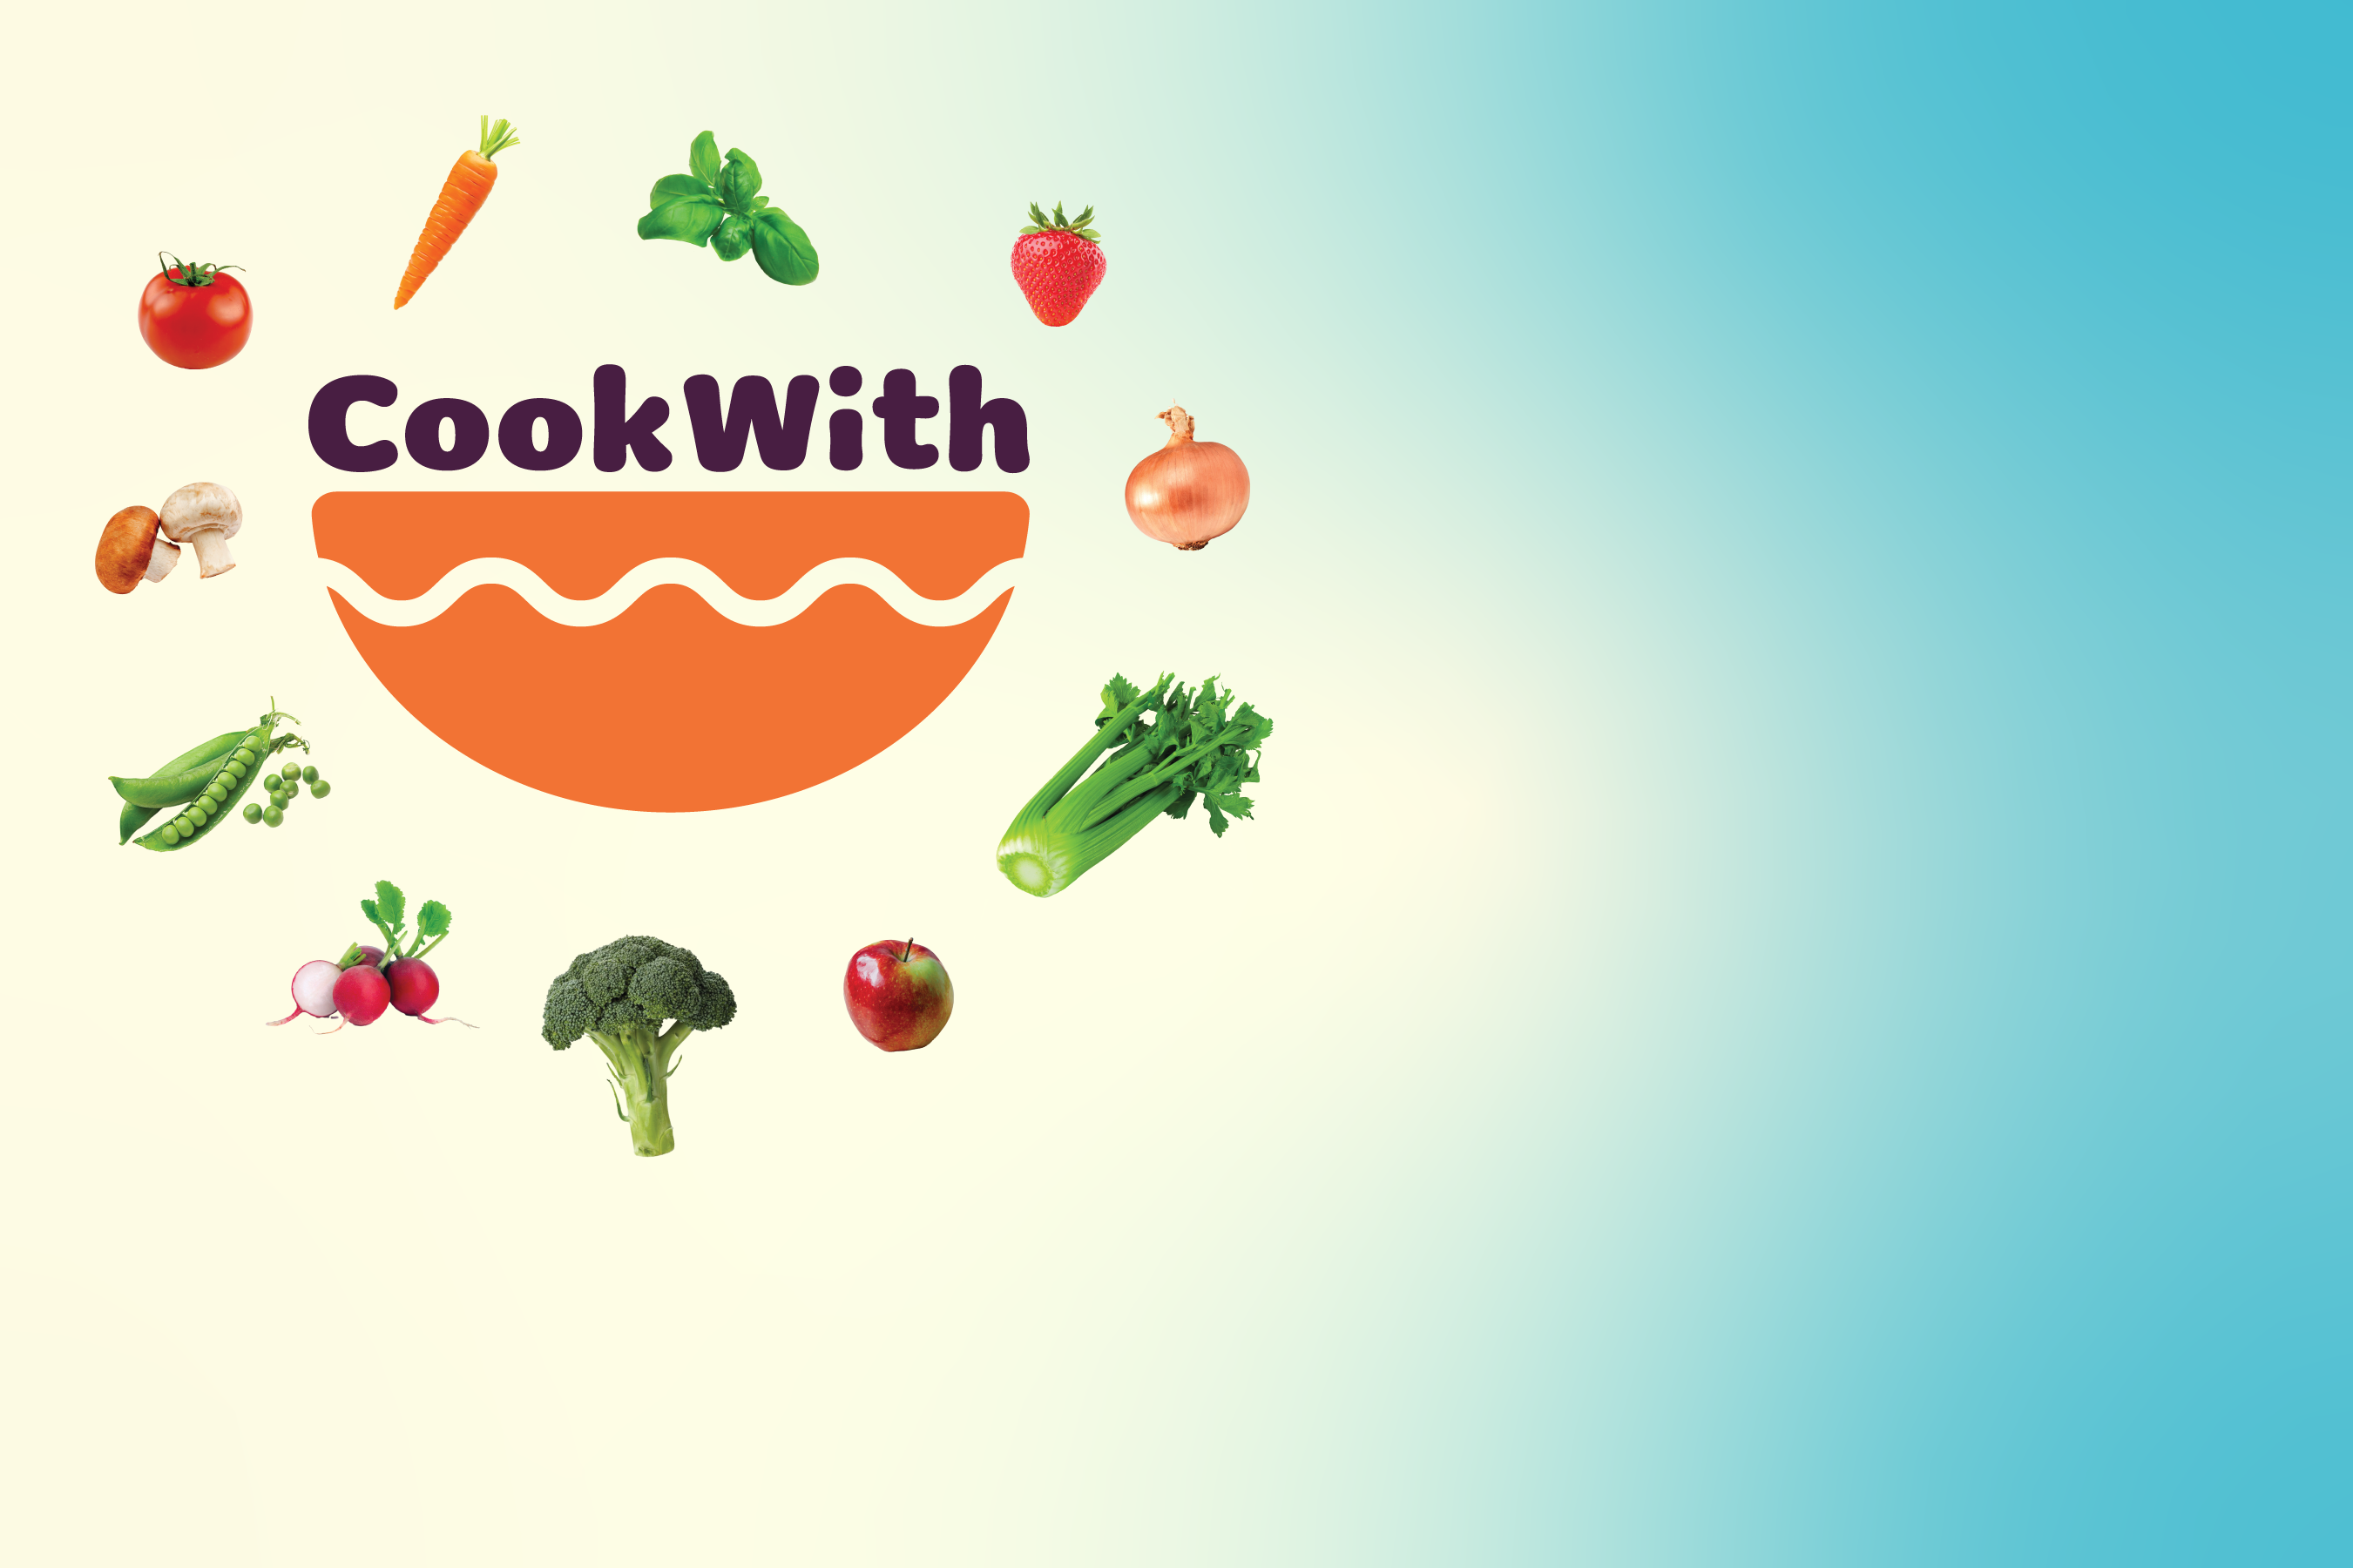 Bienvenido a la aplicación CookWith. Mira qué aspecto tiene dentro de la aplicación. Una interfaz sencilla permite a los usuarios navegar fácilmente. Encuentra alimentos y recetas saludables. Lee cómo hacerlo. Ordena las categorías que quieras.